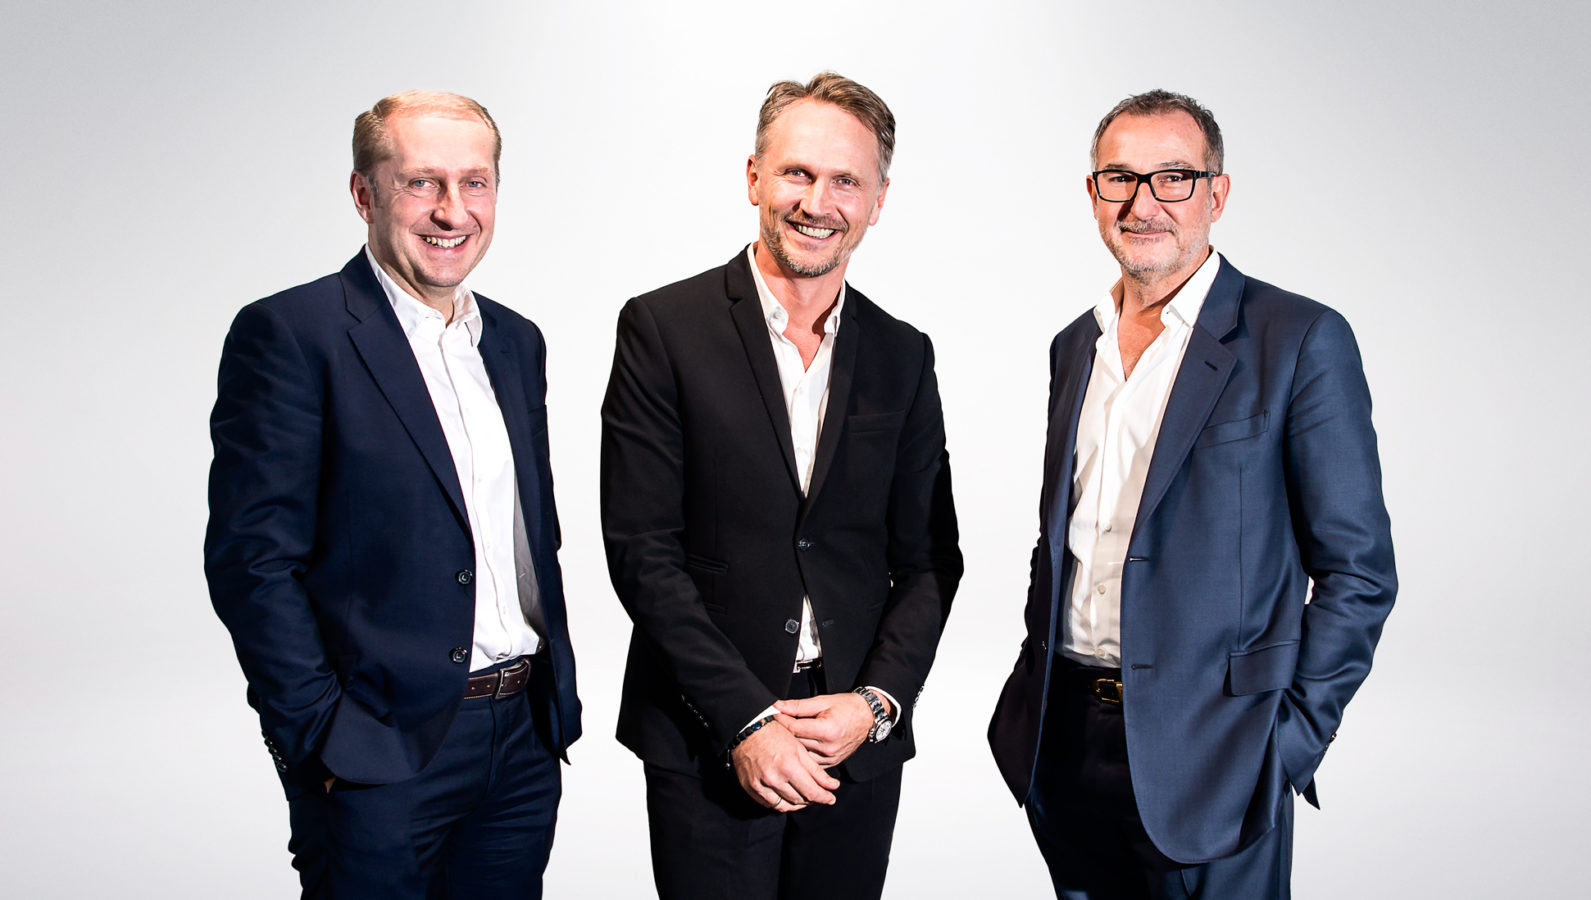 bBlue-infinity, leader suisse de la transformation digitale, prend une dimension mondiale en rejoignant le groupe Dentsu Aegis Network.